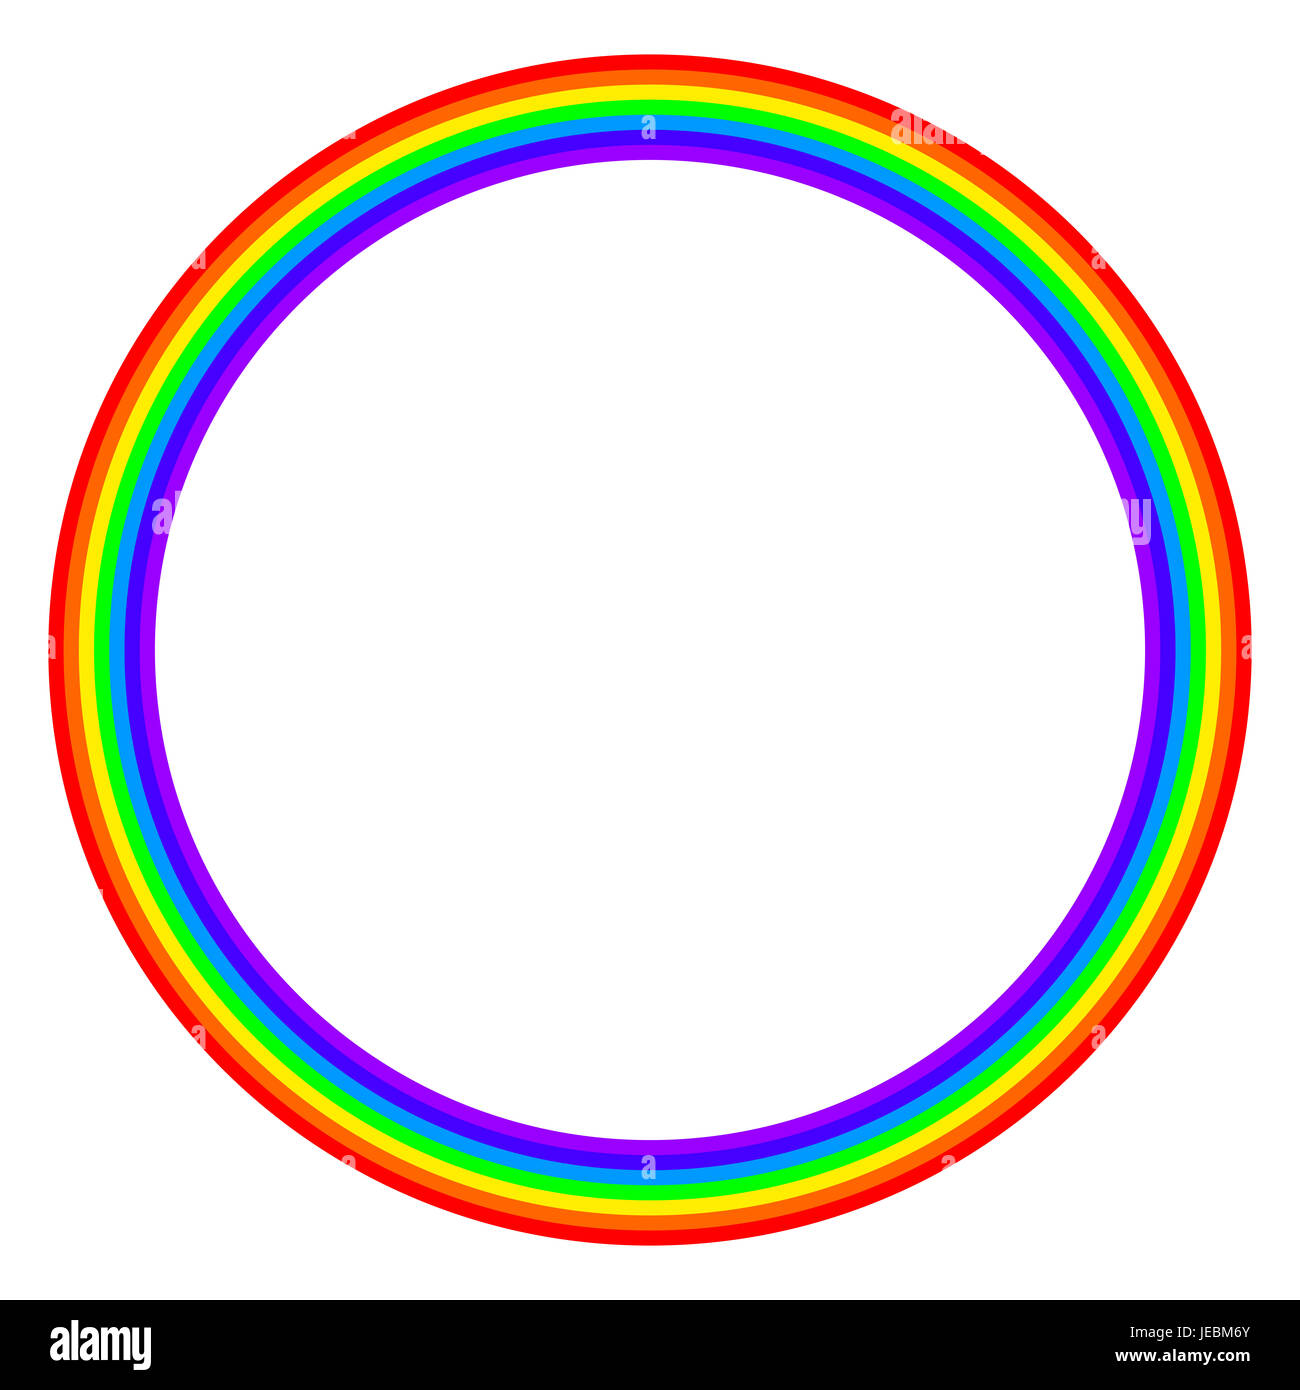 Rainbow cerchio colorato su sfondo bianco. Anello con bande arcobaleno in sette colori principali dello spettro e la luce visibile. Foto Stock